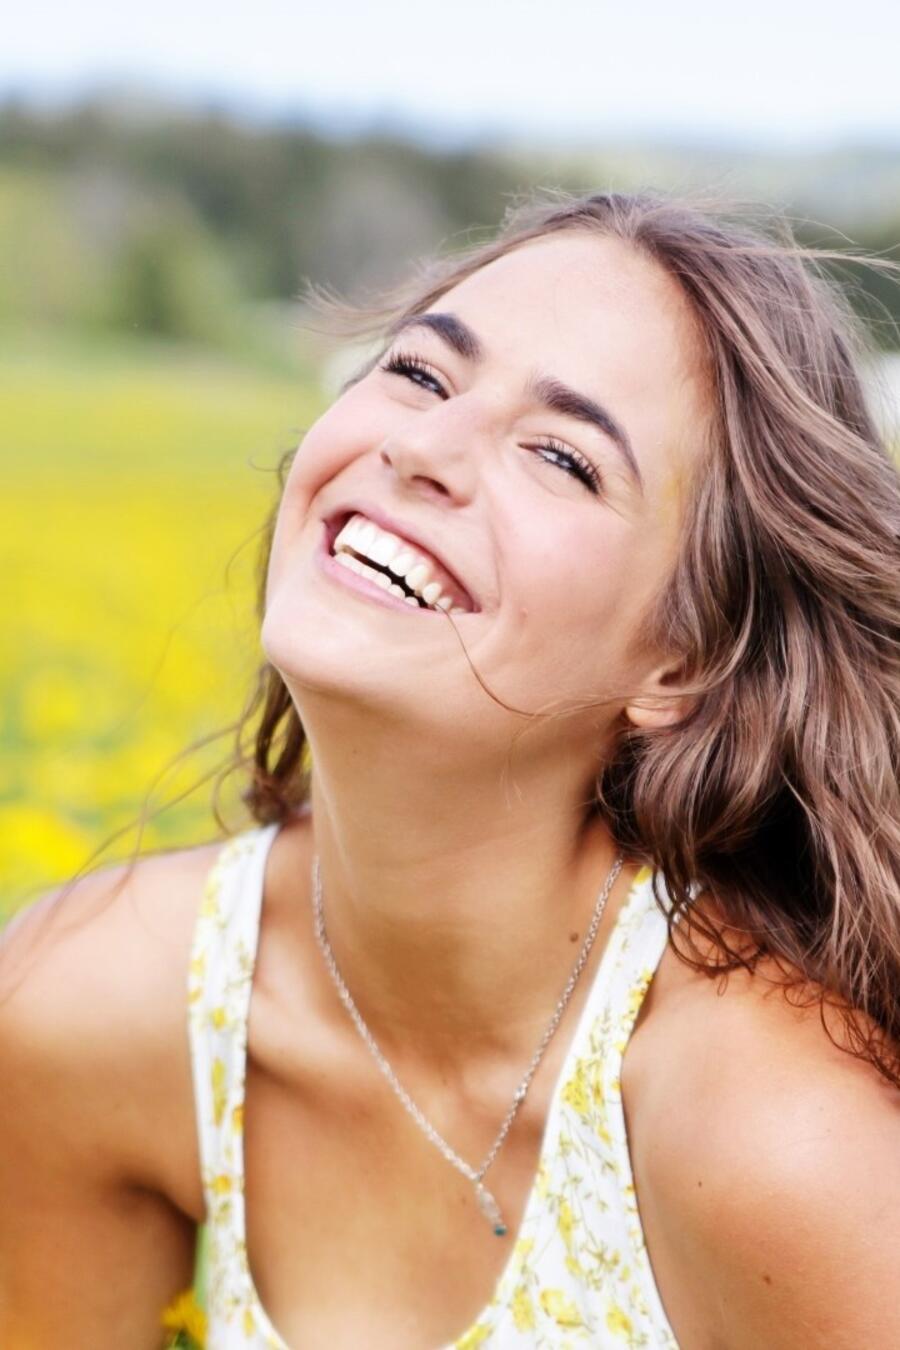 Mujer sonriendo en un prado con flores amarillas